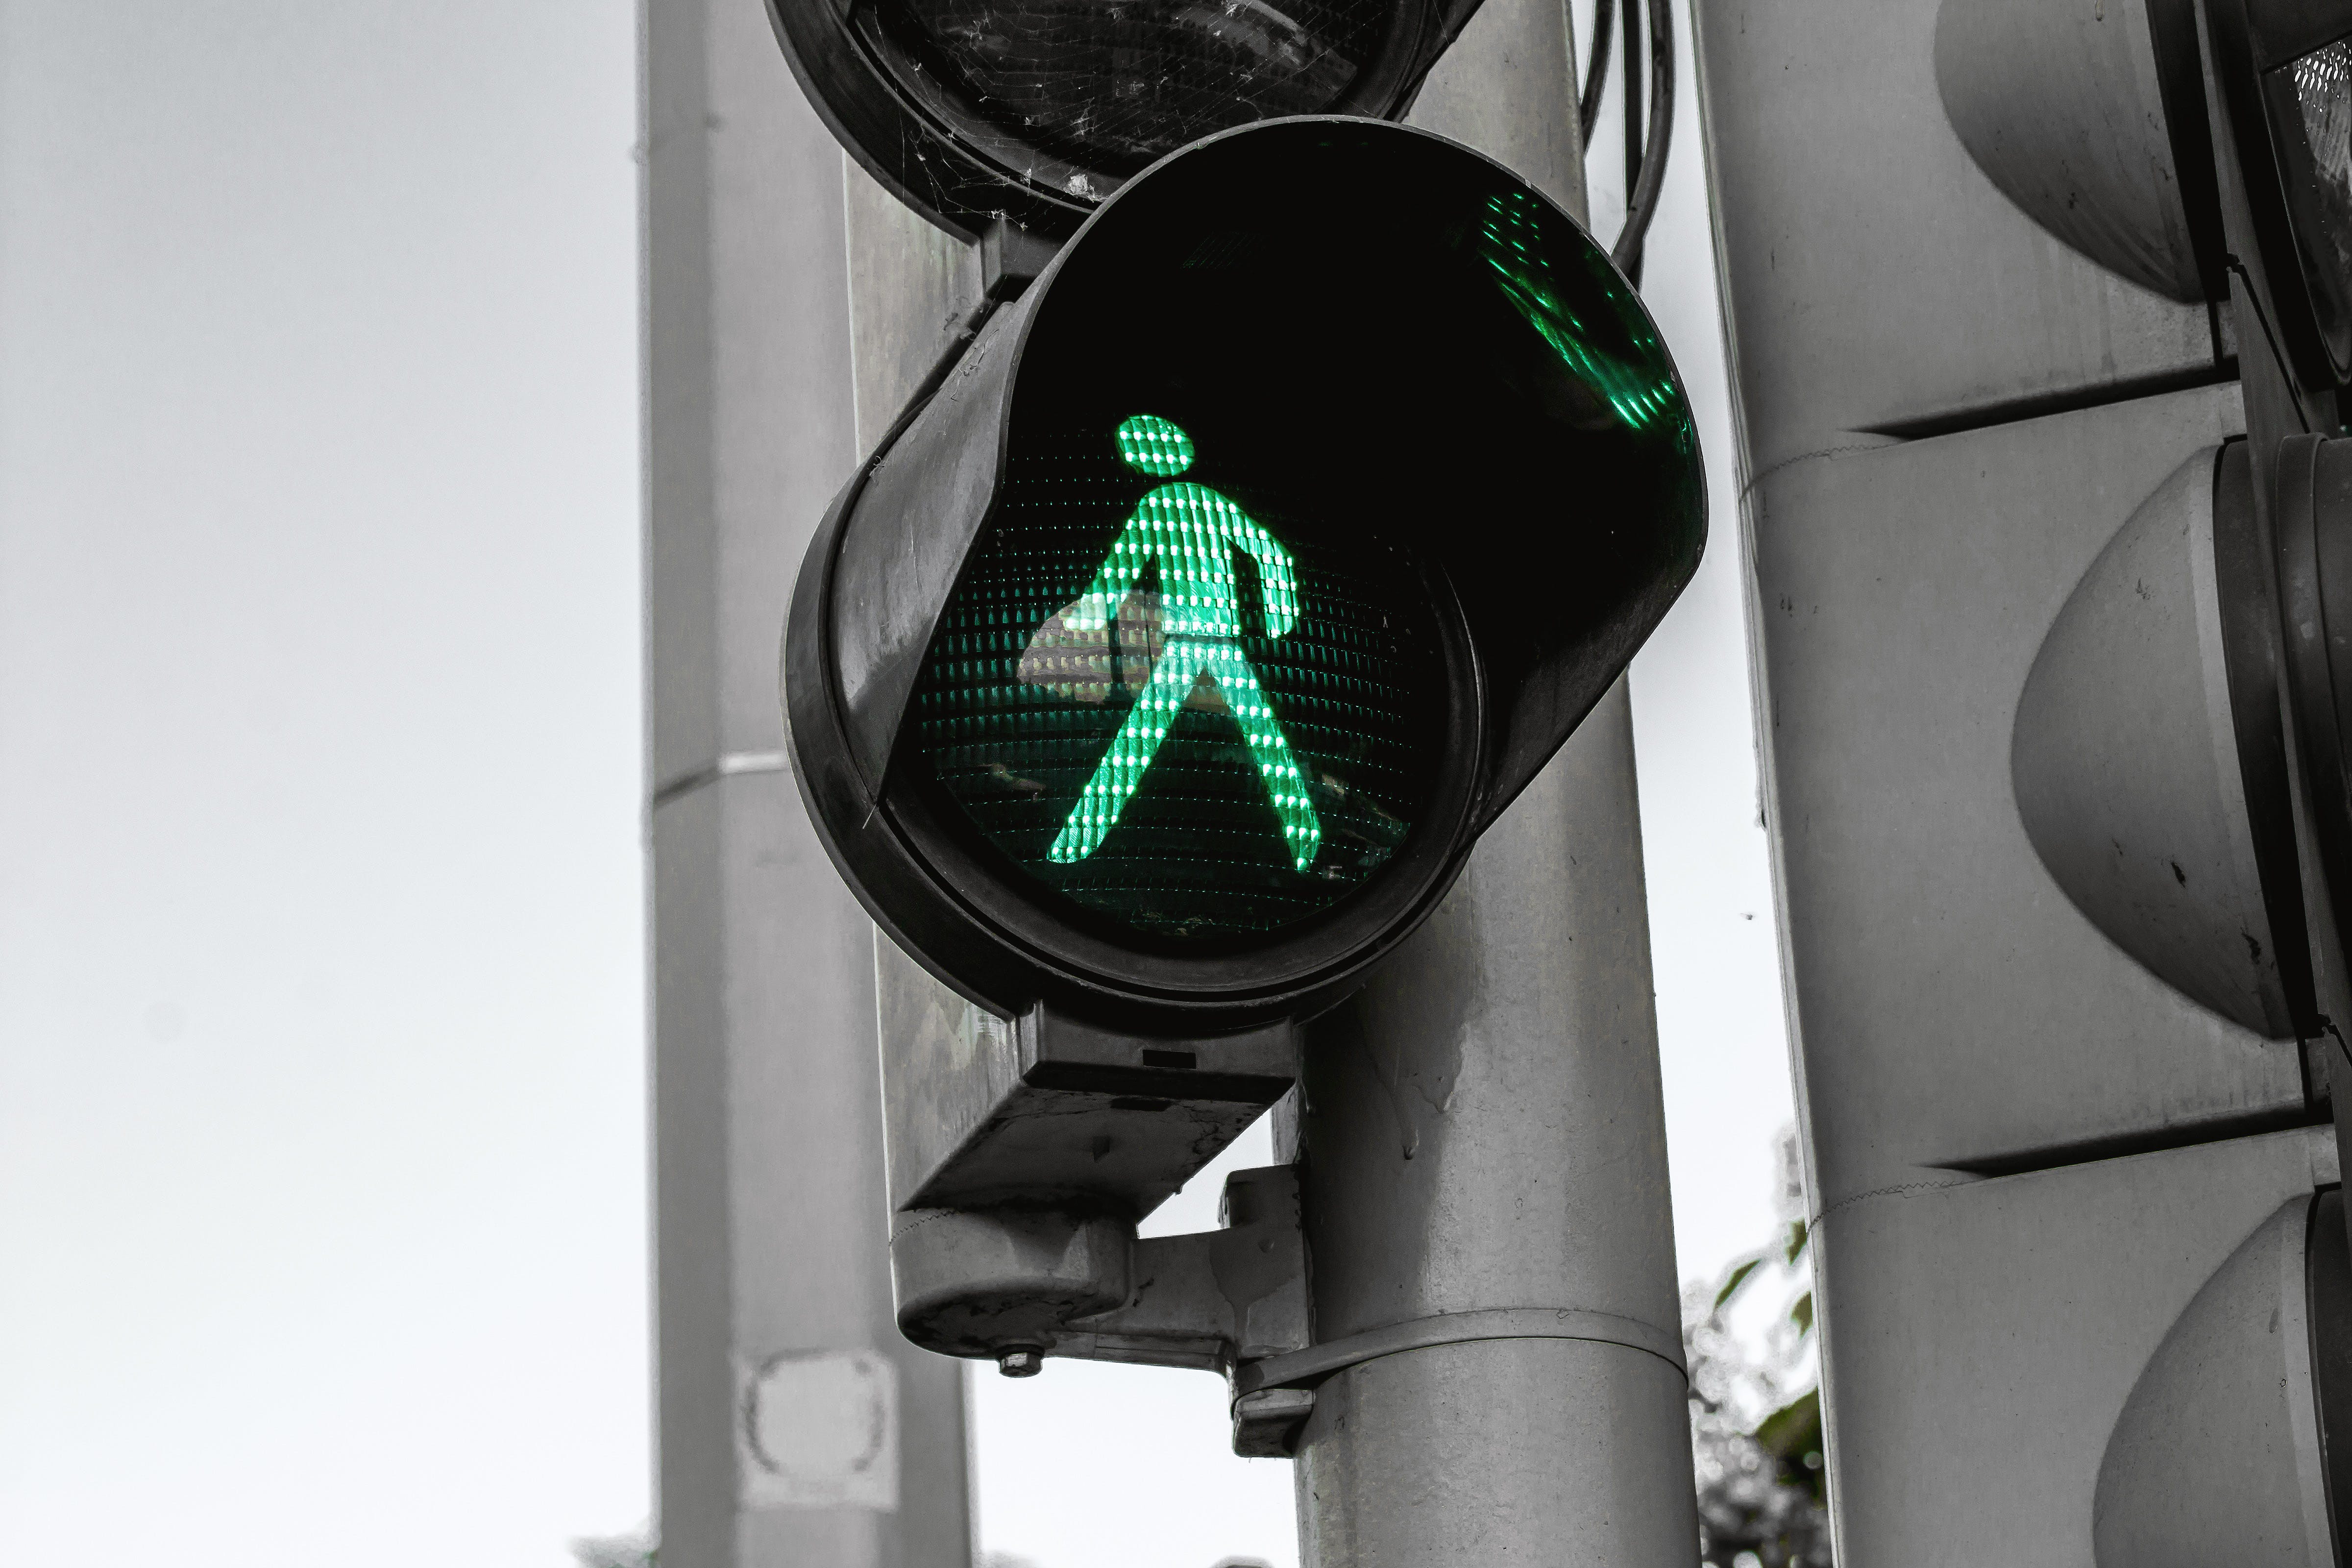 Với đèn giao thông, bạn sẽ cảm thấy an toàn khi di chuyển trên đường. Từ đèn đỏ đến đèn xanh, chúng giúp tăng cường tính tự giác của người lái và hạn chế tai nạn giao thông. Hãy xem hình ảnh đèn giao thông để hiểu thêm về sự quan trọng của chúng.